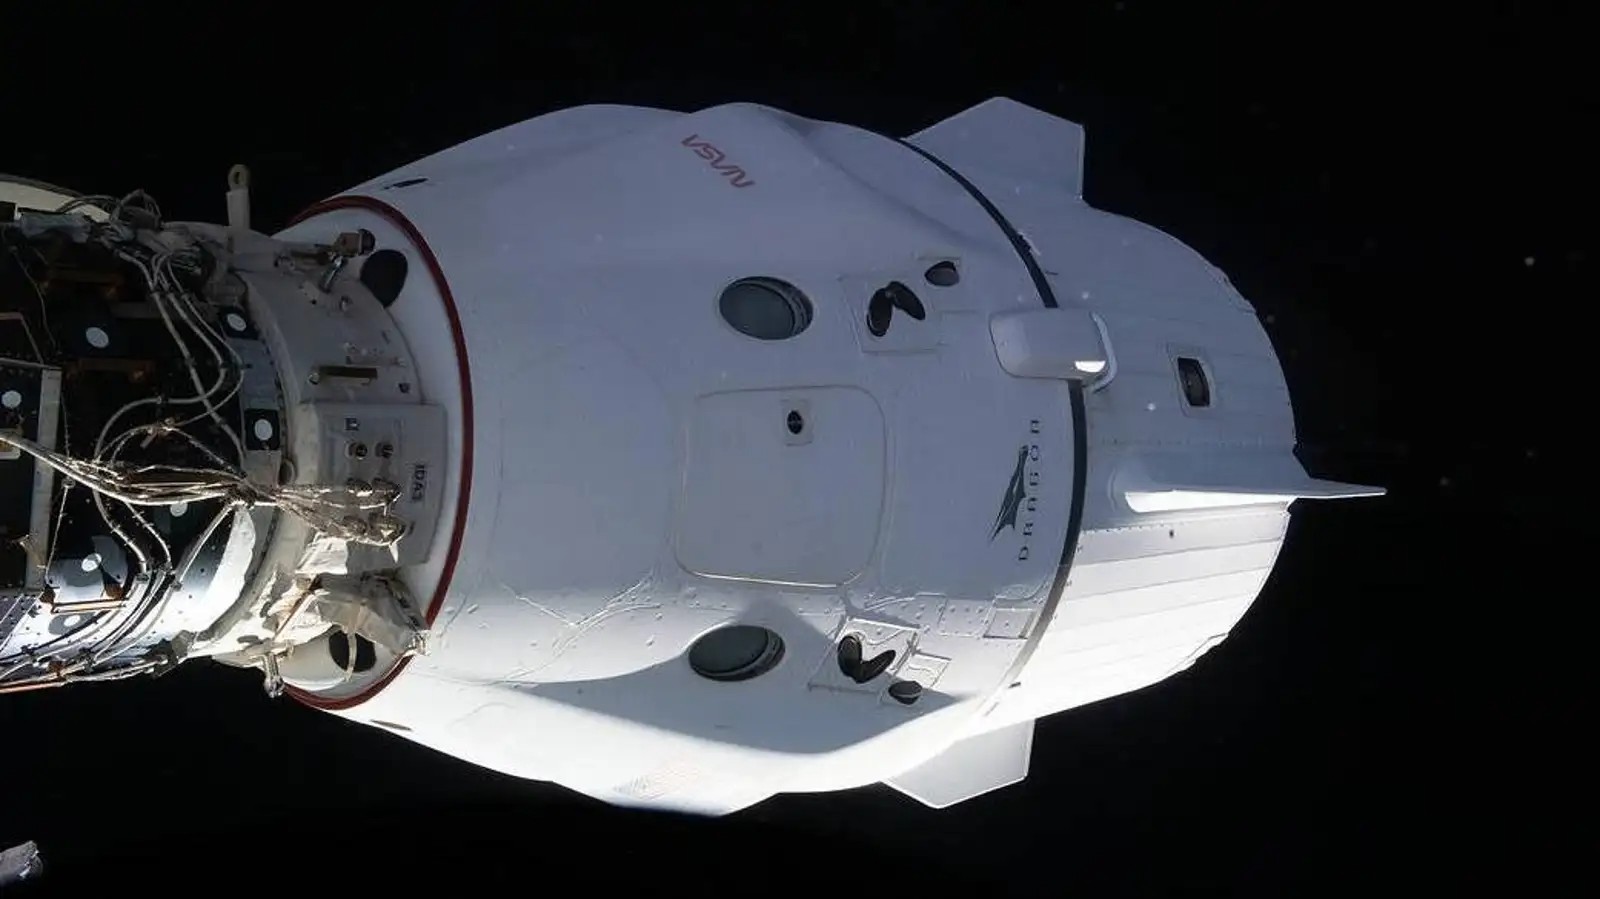 Cargo Dragon in viaggio verso la ISS, è la 25° missione